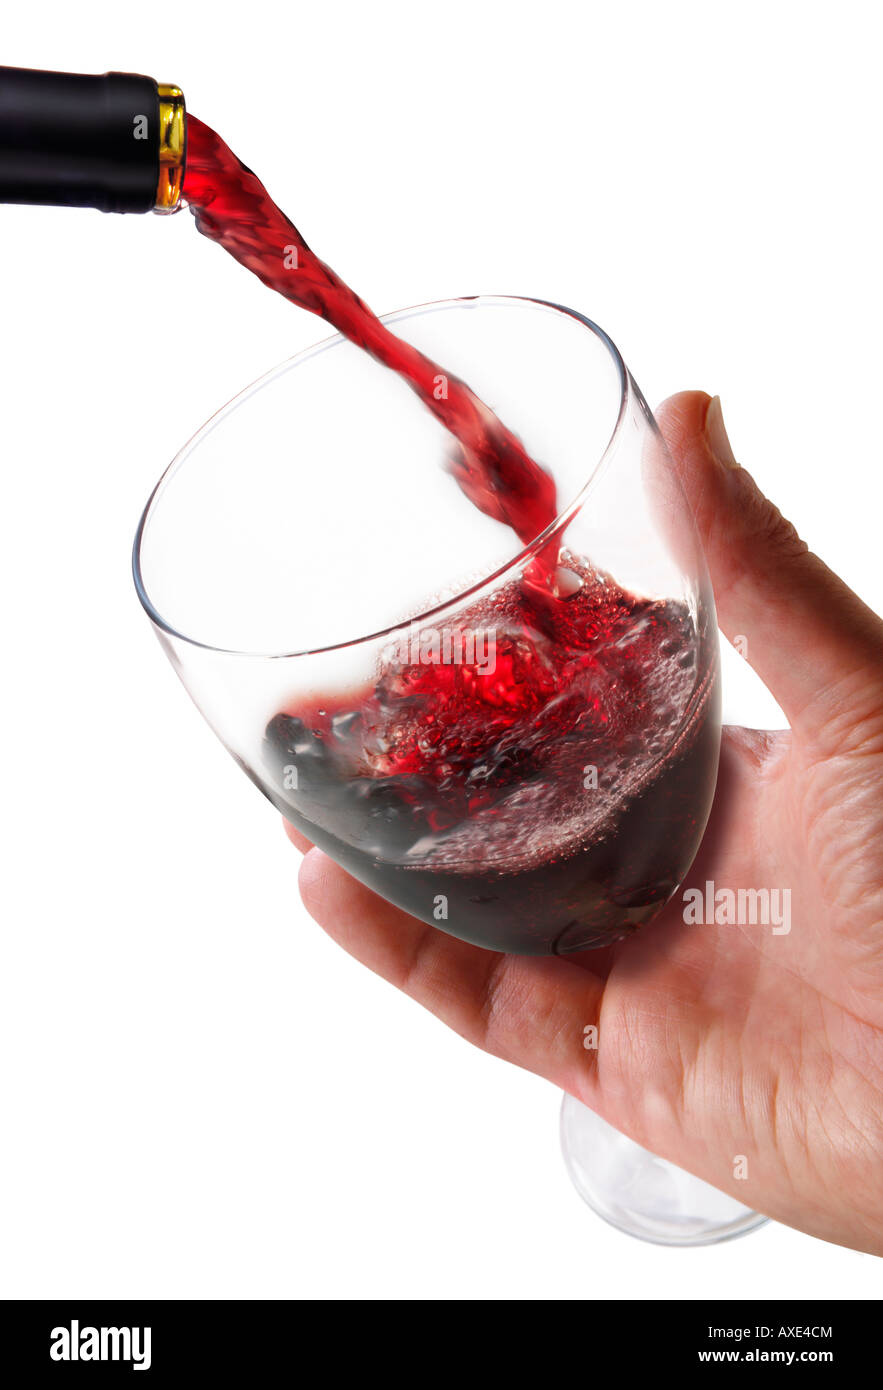 Rotwein in einem Glas Wein vor einem weißen Hintergrund durch die Hand eines Mannes gehalten Stockfoto